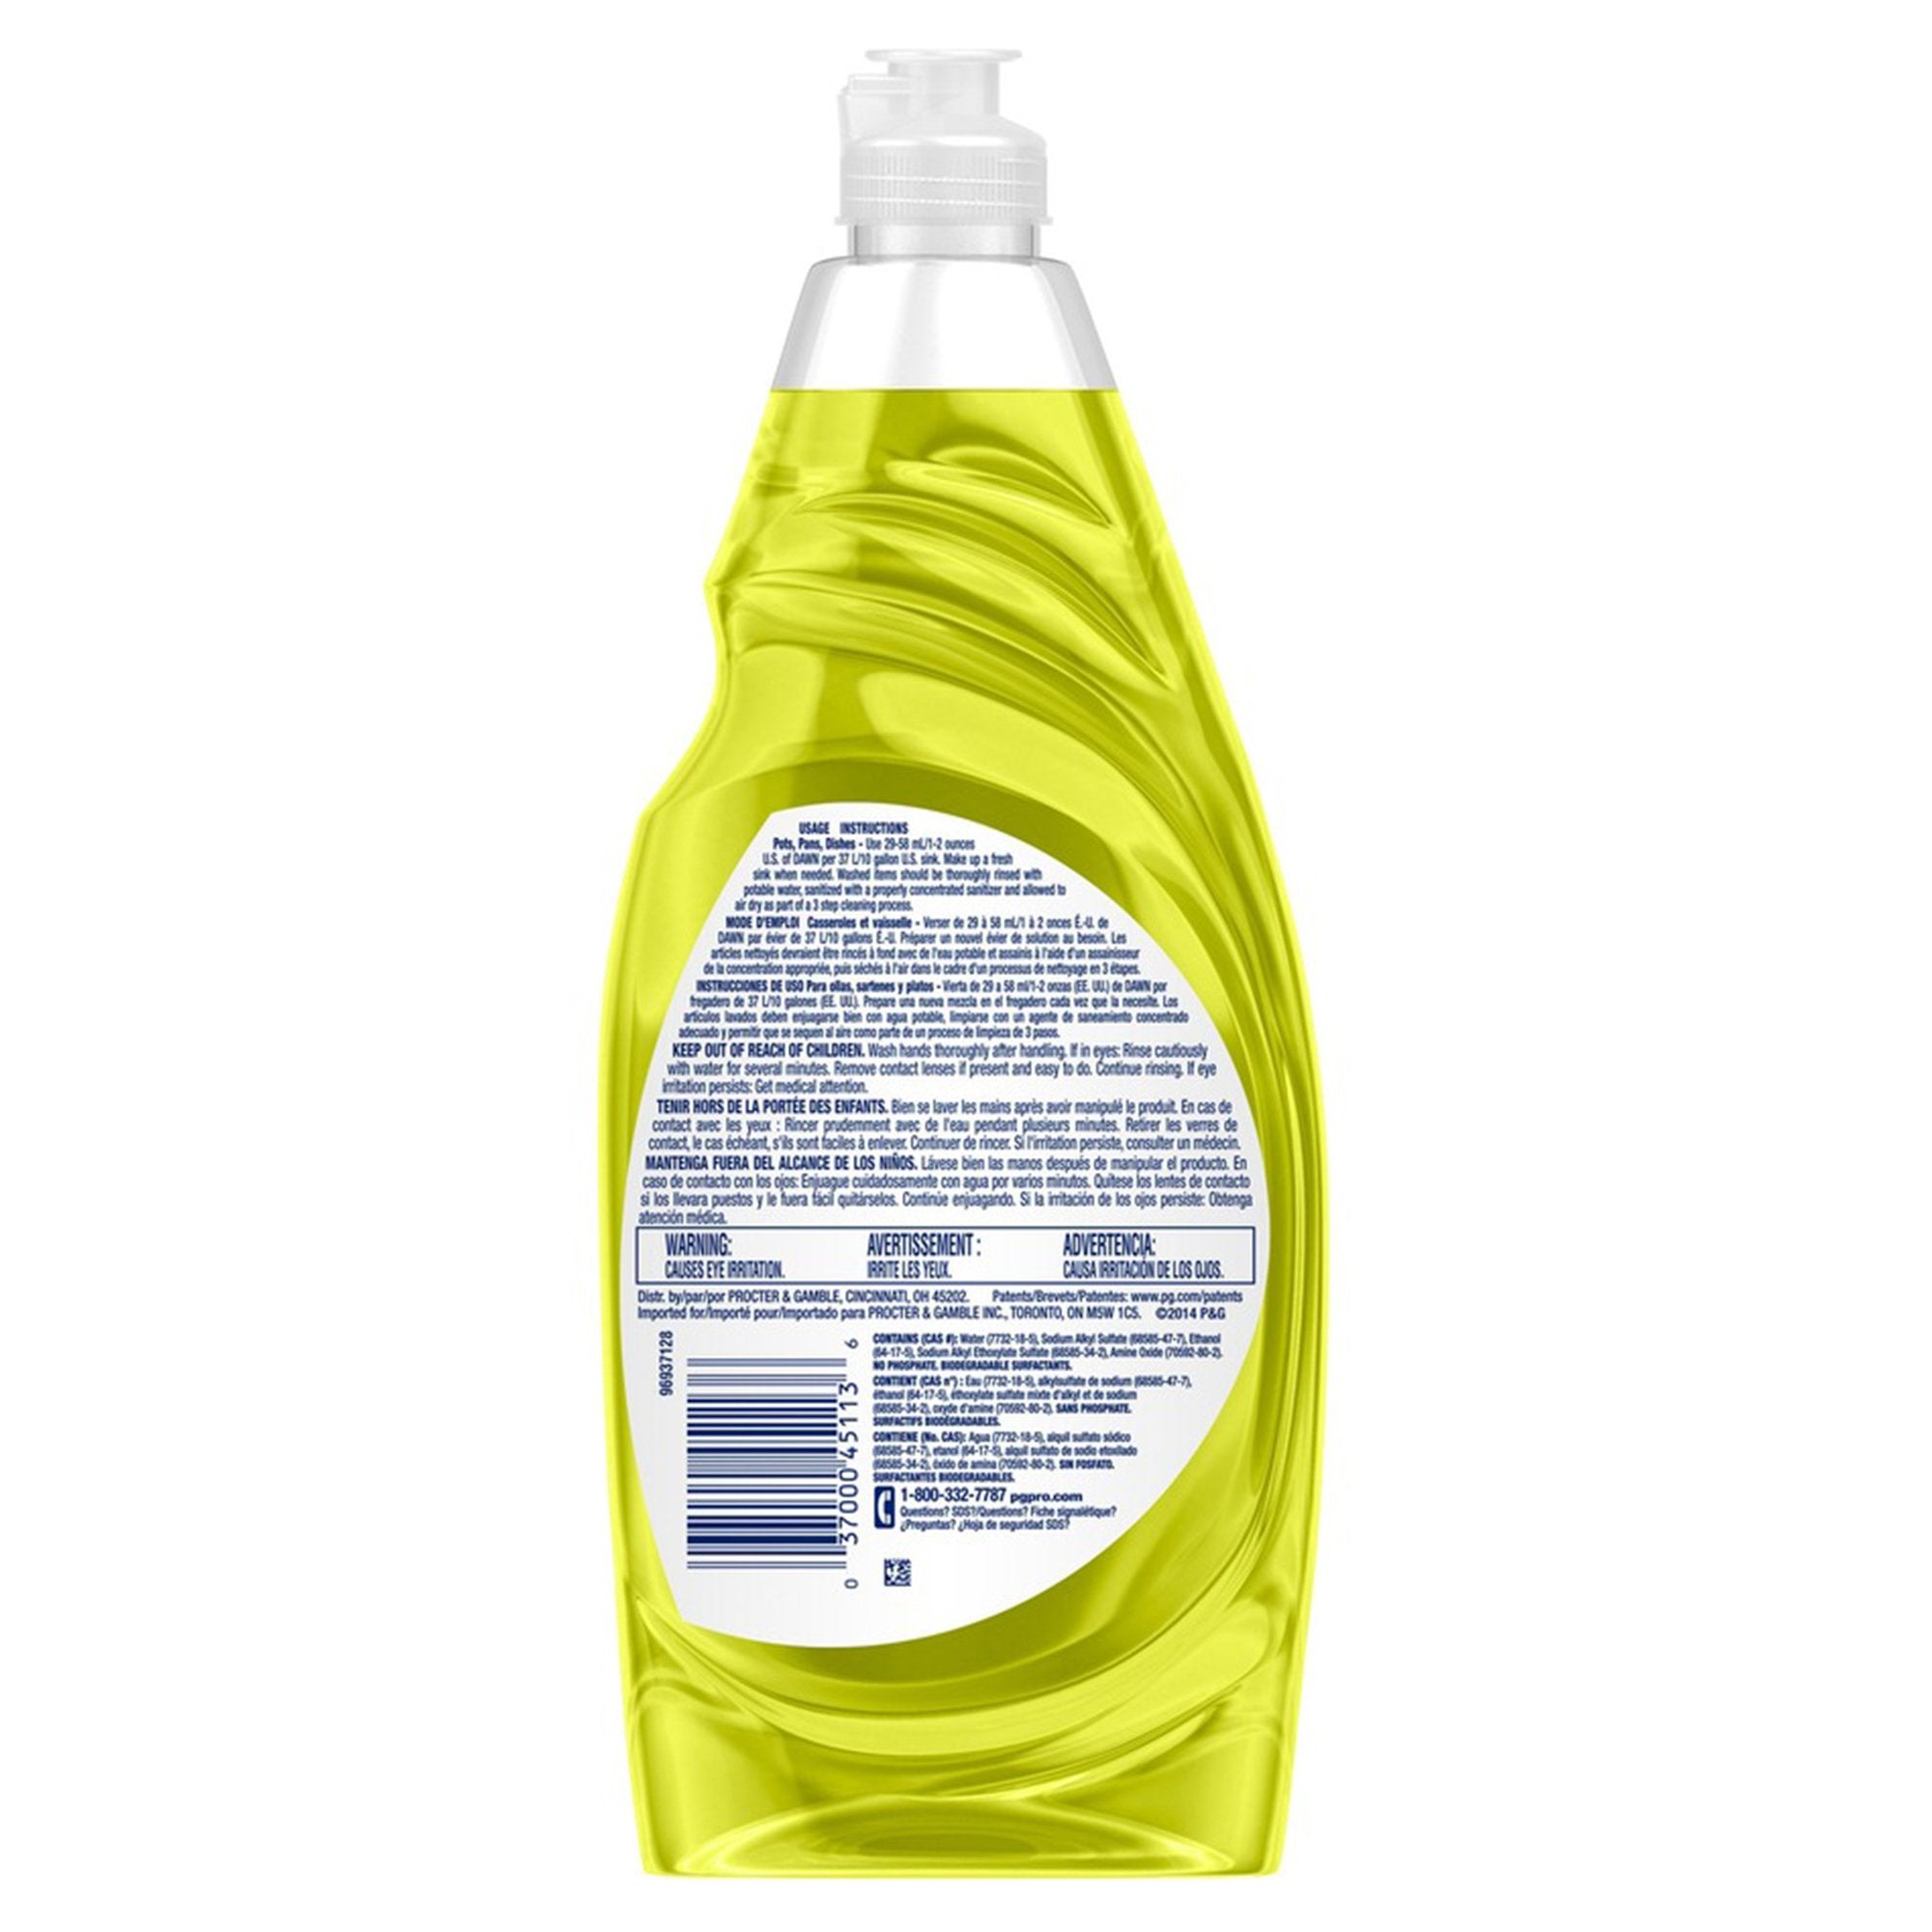 Dish Detergent Dawn® Professional 38 oz. Bottle Liquid Lemon Scent